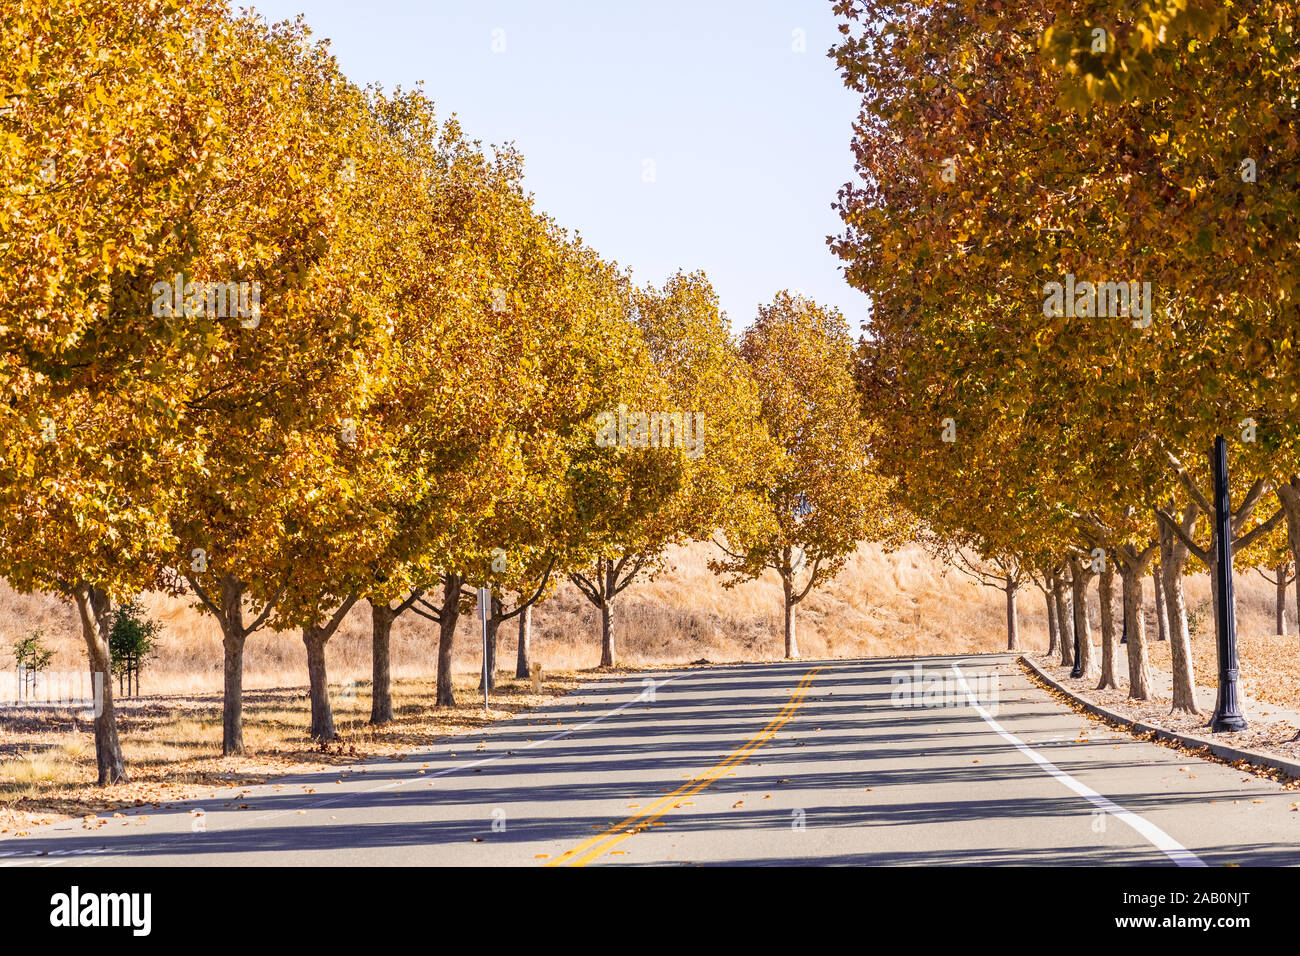 Schönen Herbst Laub auf einer Straße aufgereiht mit London Ebene (Platanus x acerifolia) Bäume; San Francisco Bay Area, Kalifornien Stockfoto